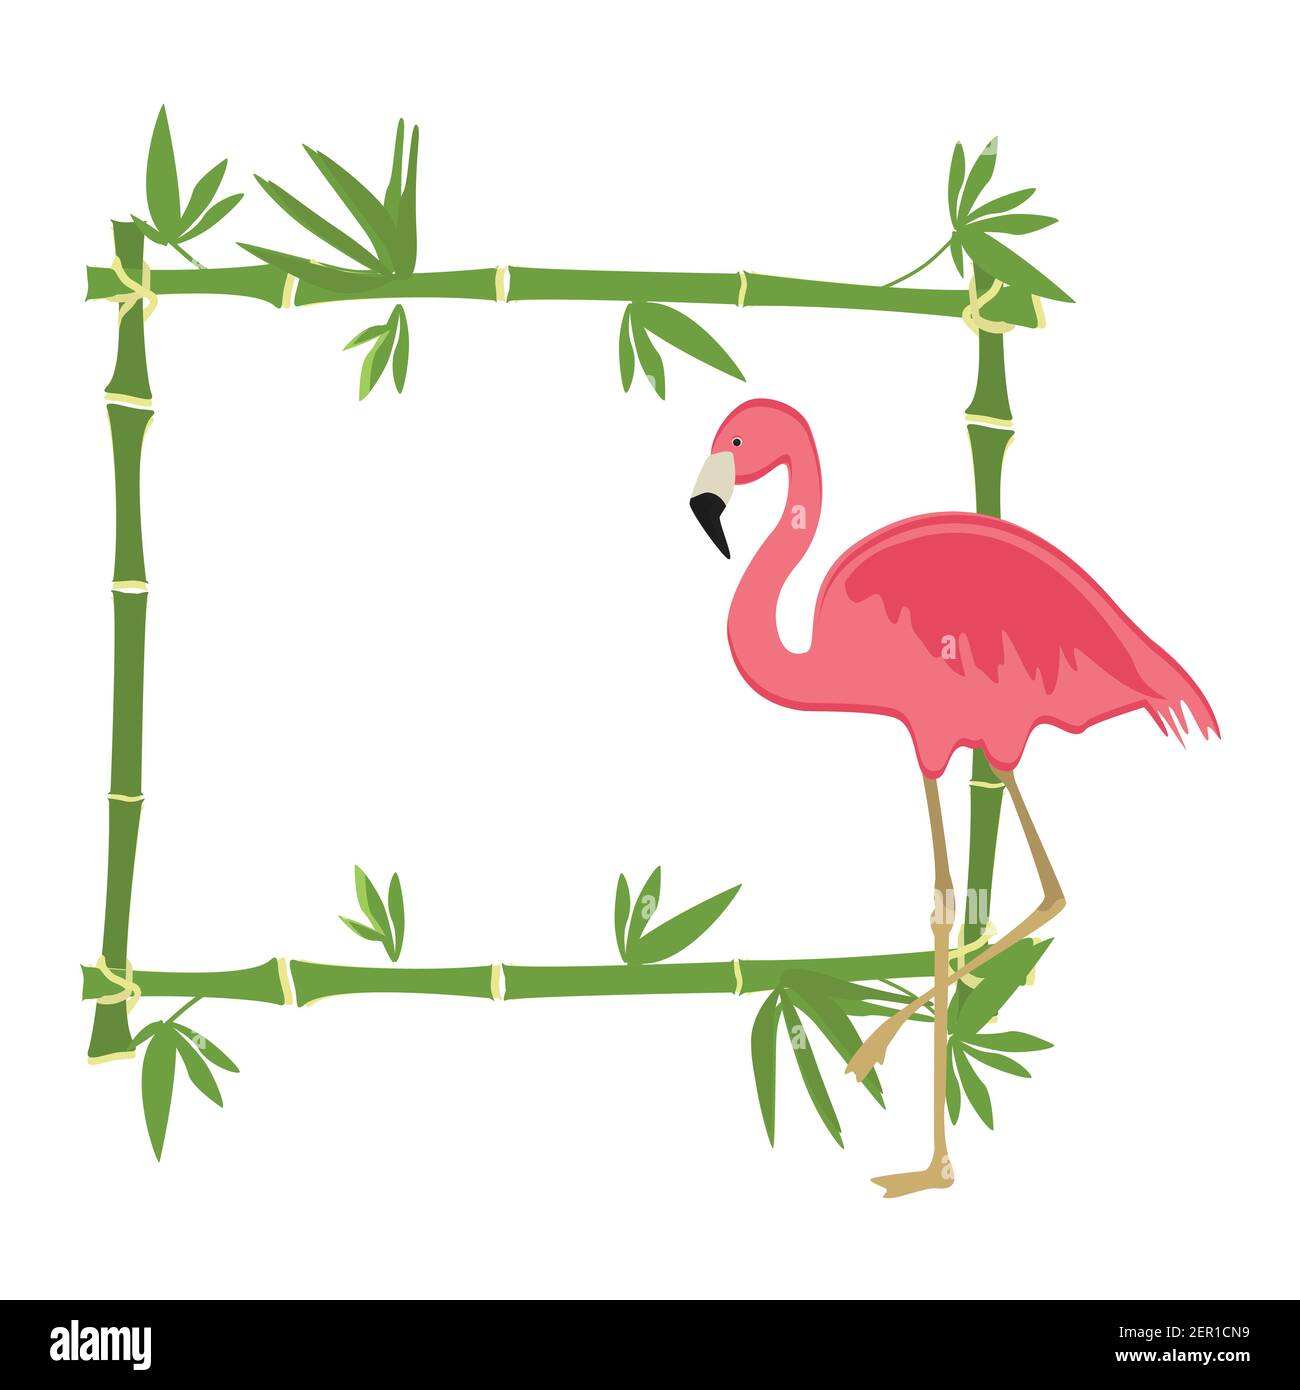 Vektor-Illustration tropische Insel Rahmen, Grenze, Poster mit exotischen Pflanzen und Vögel. Bambusrahmen. Rosa Flamingo Stock Vektor